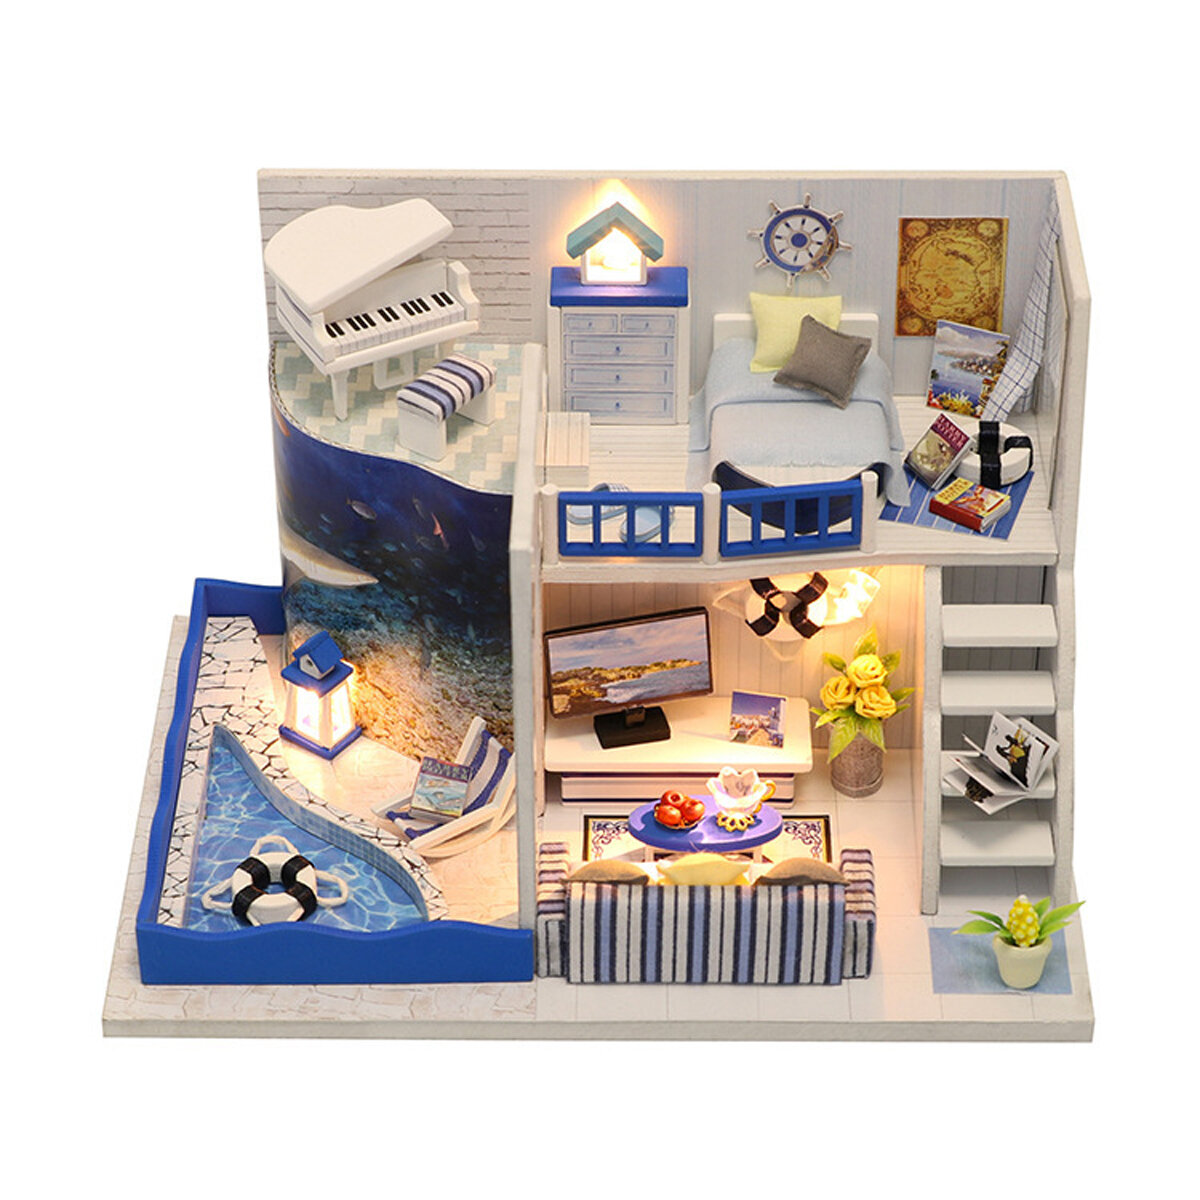 Houten 3D DIY handgemaakte montage poppenhuis miniatuur kit met meubels LED licht educatief speelgoed voor kinderen geschenkverzameling